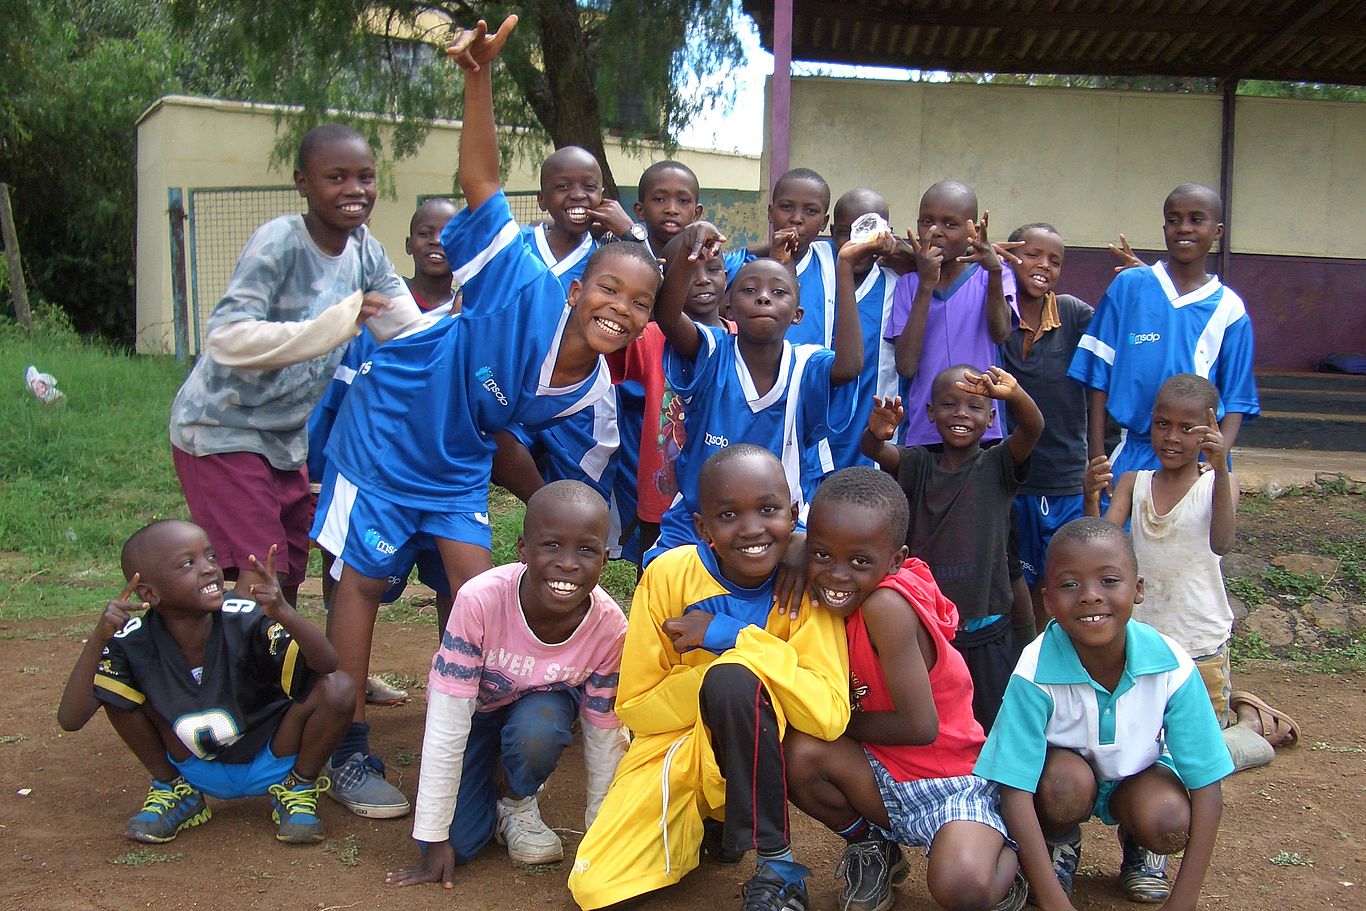 Eine Gruppe Kinder posiert für die Kamera im Sportdress.